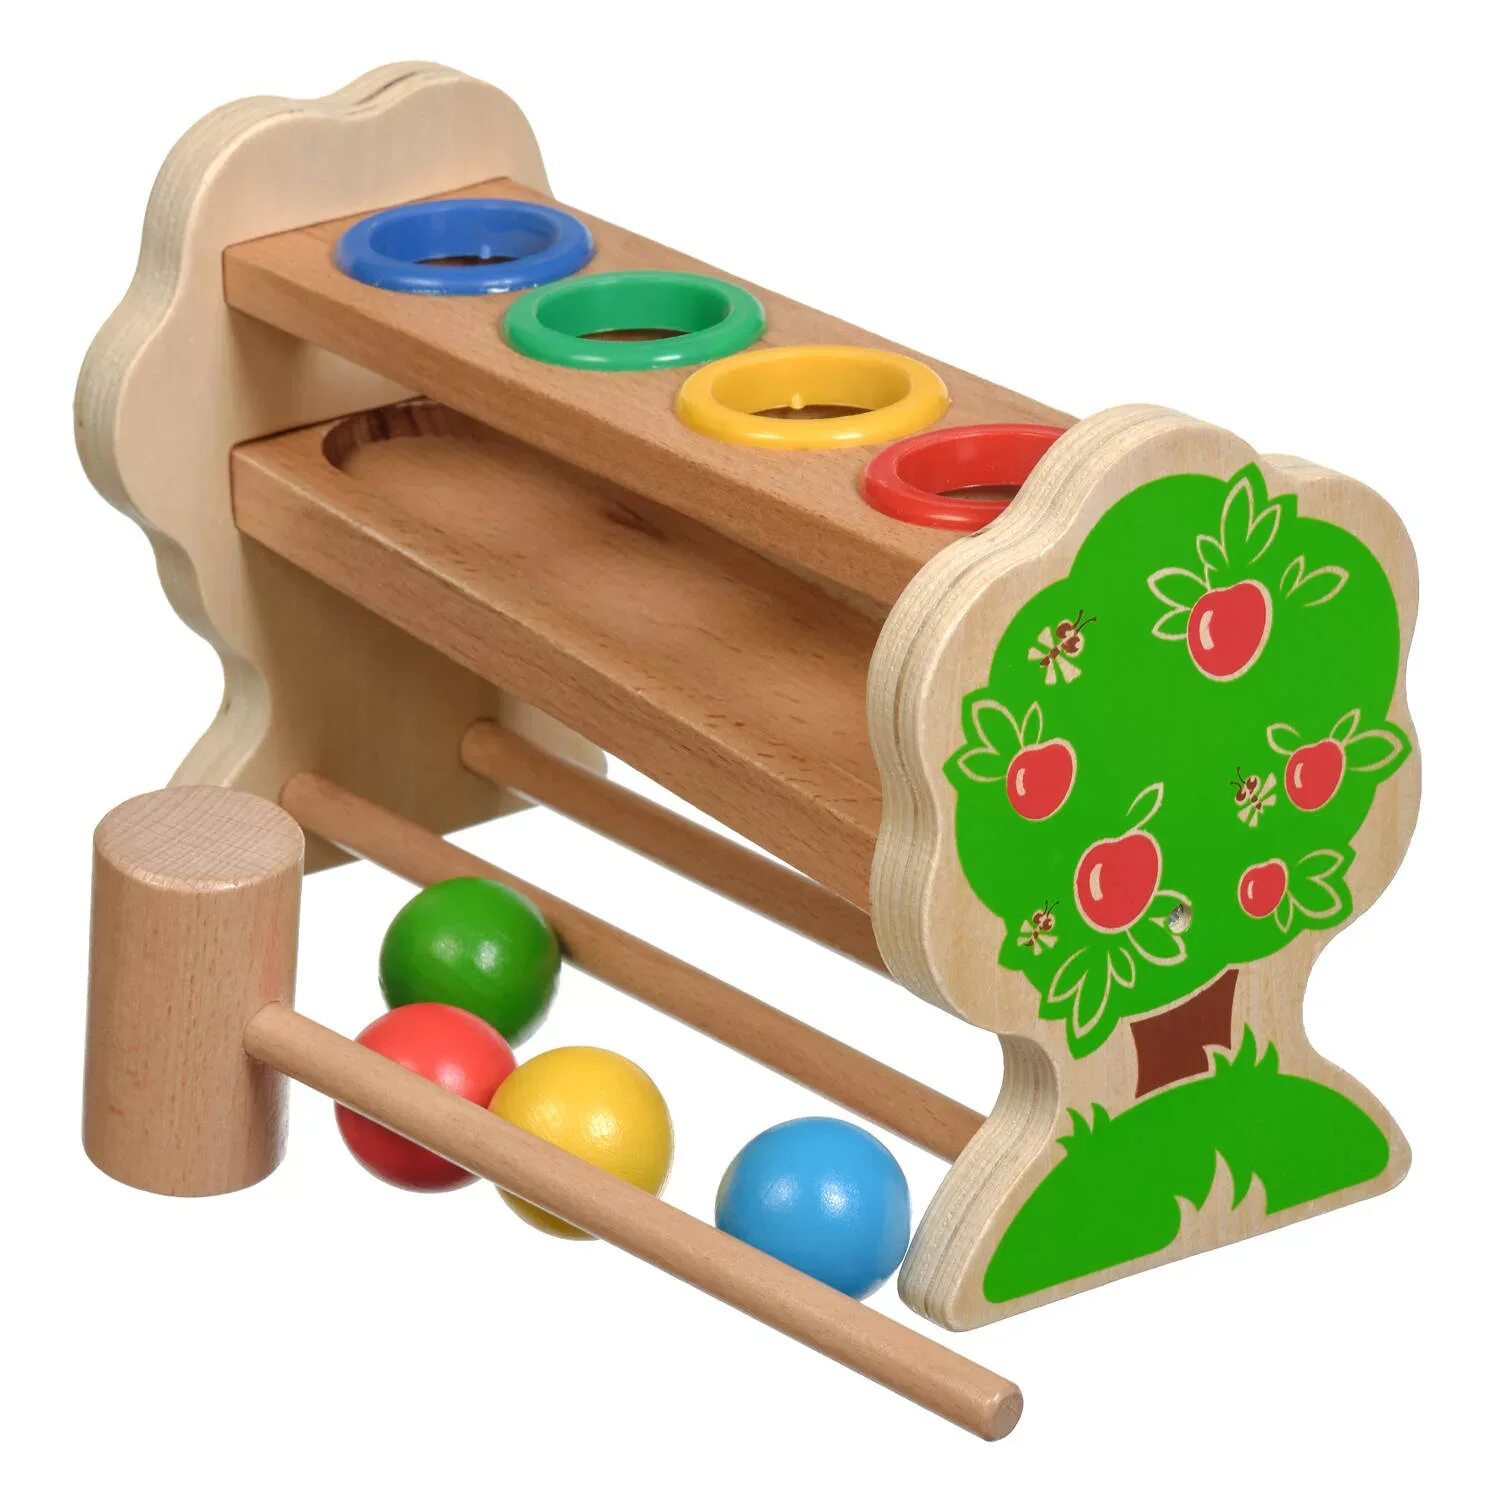 Горка с шарами. Стучалка "горка-шарики" (д003). МДИ машинка стучалка. Игрушка деревянная развивающая. Развивающие игрушки из дерева.